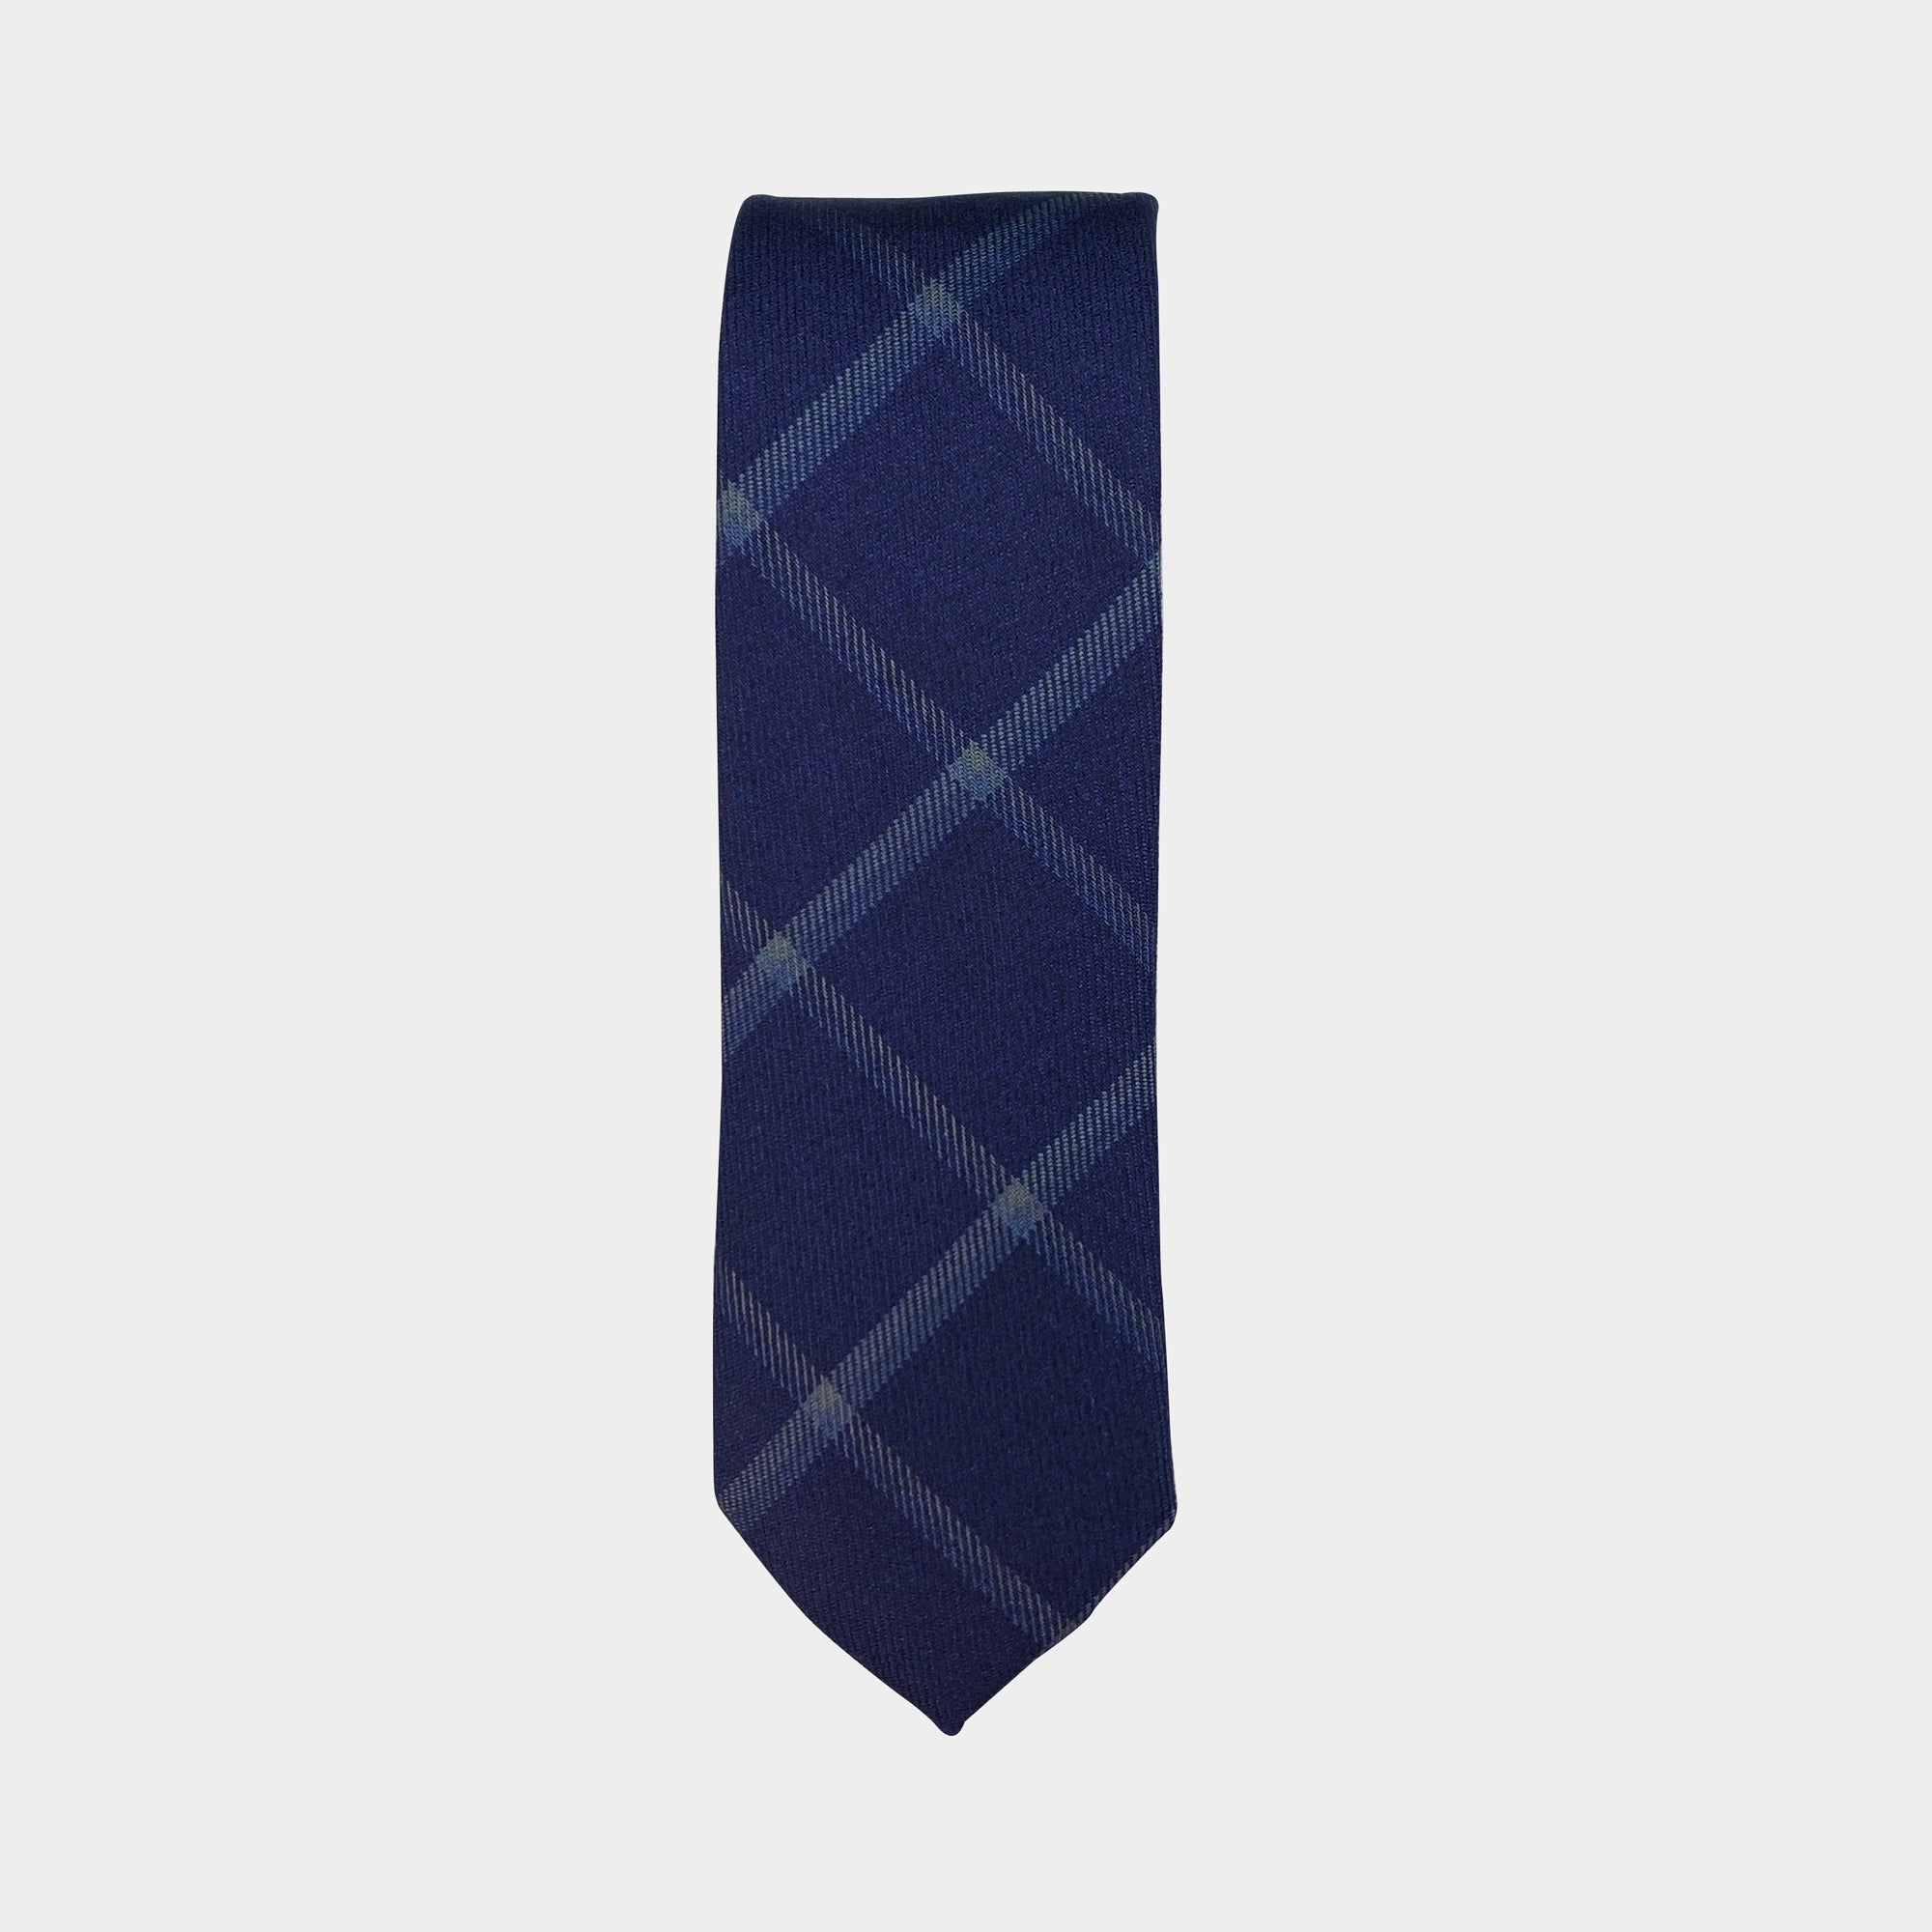 AKSEL - Men's Tie